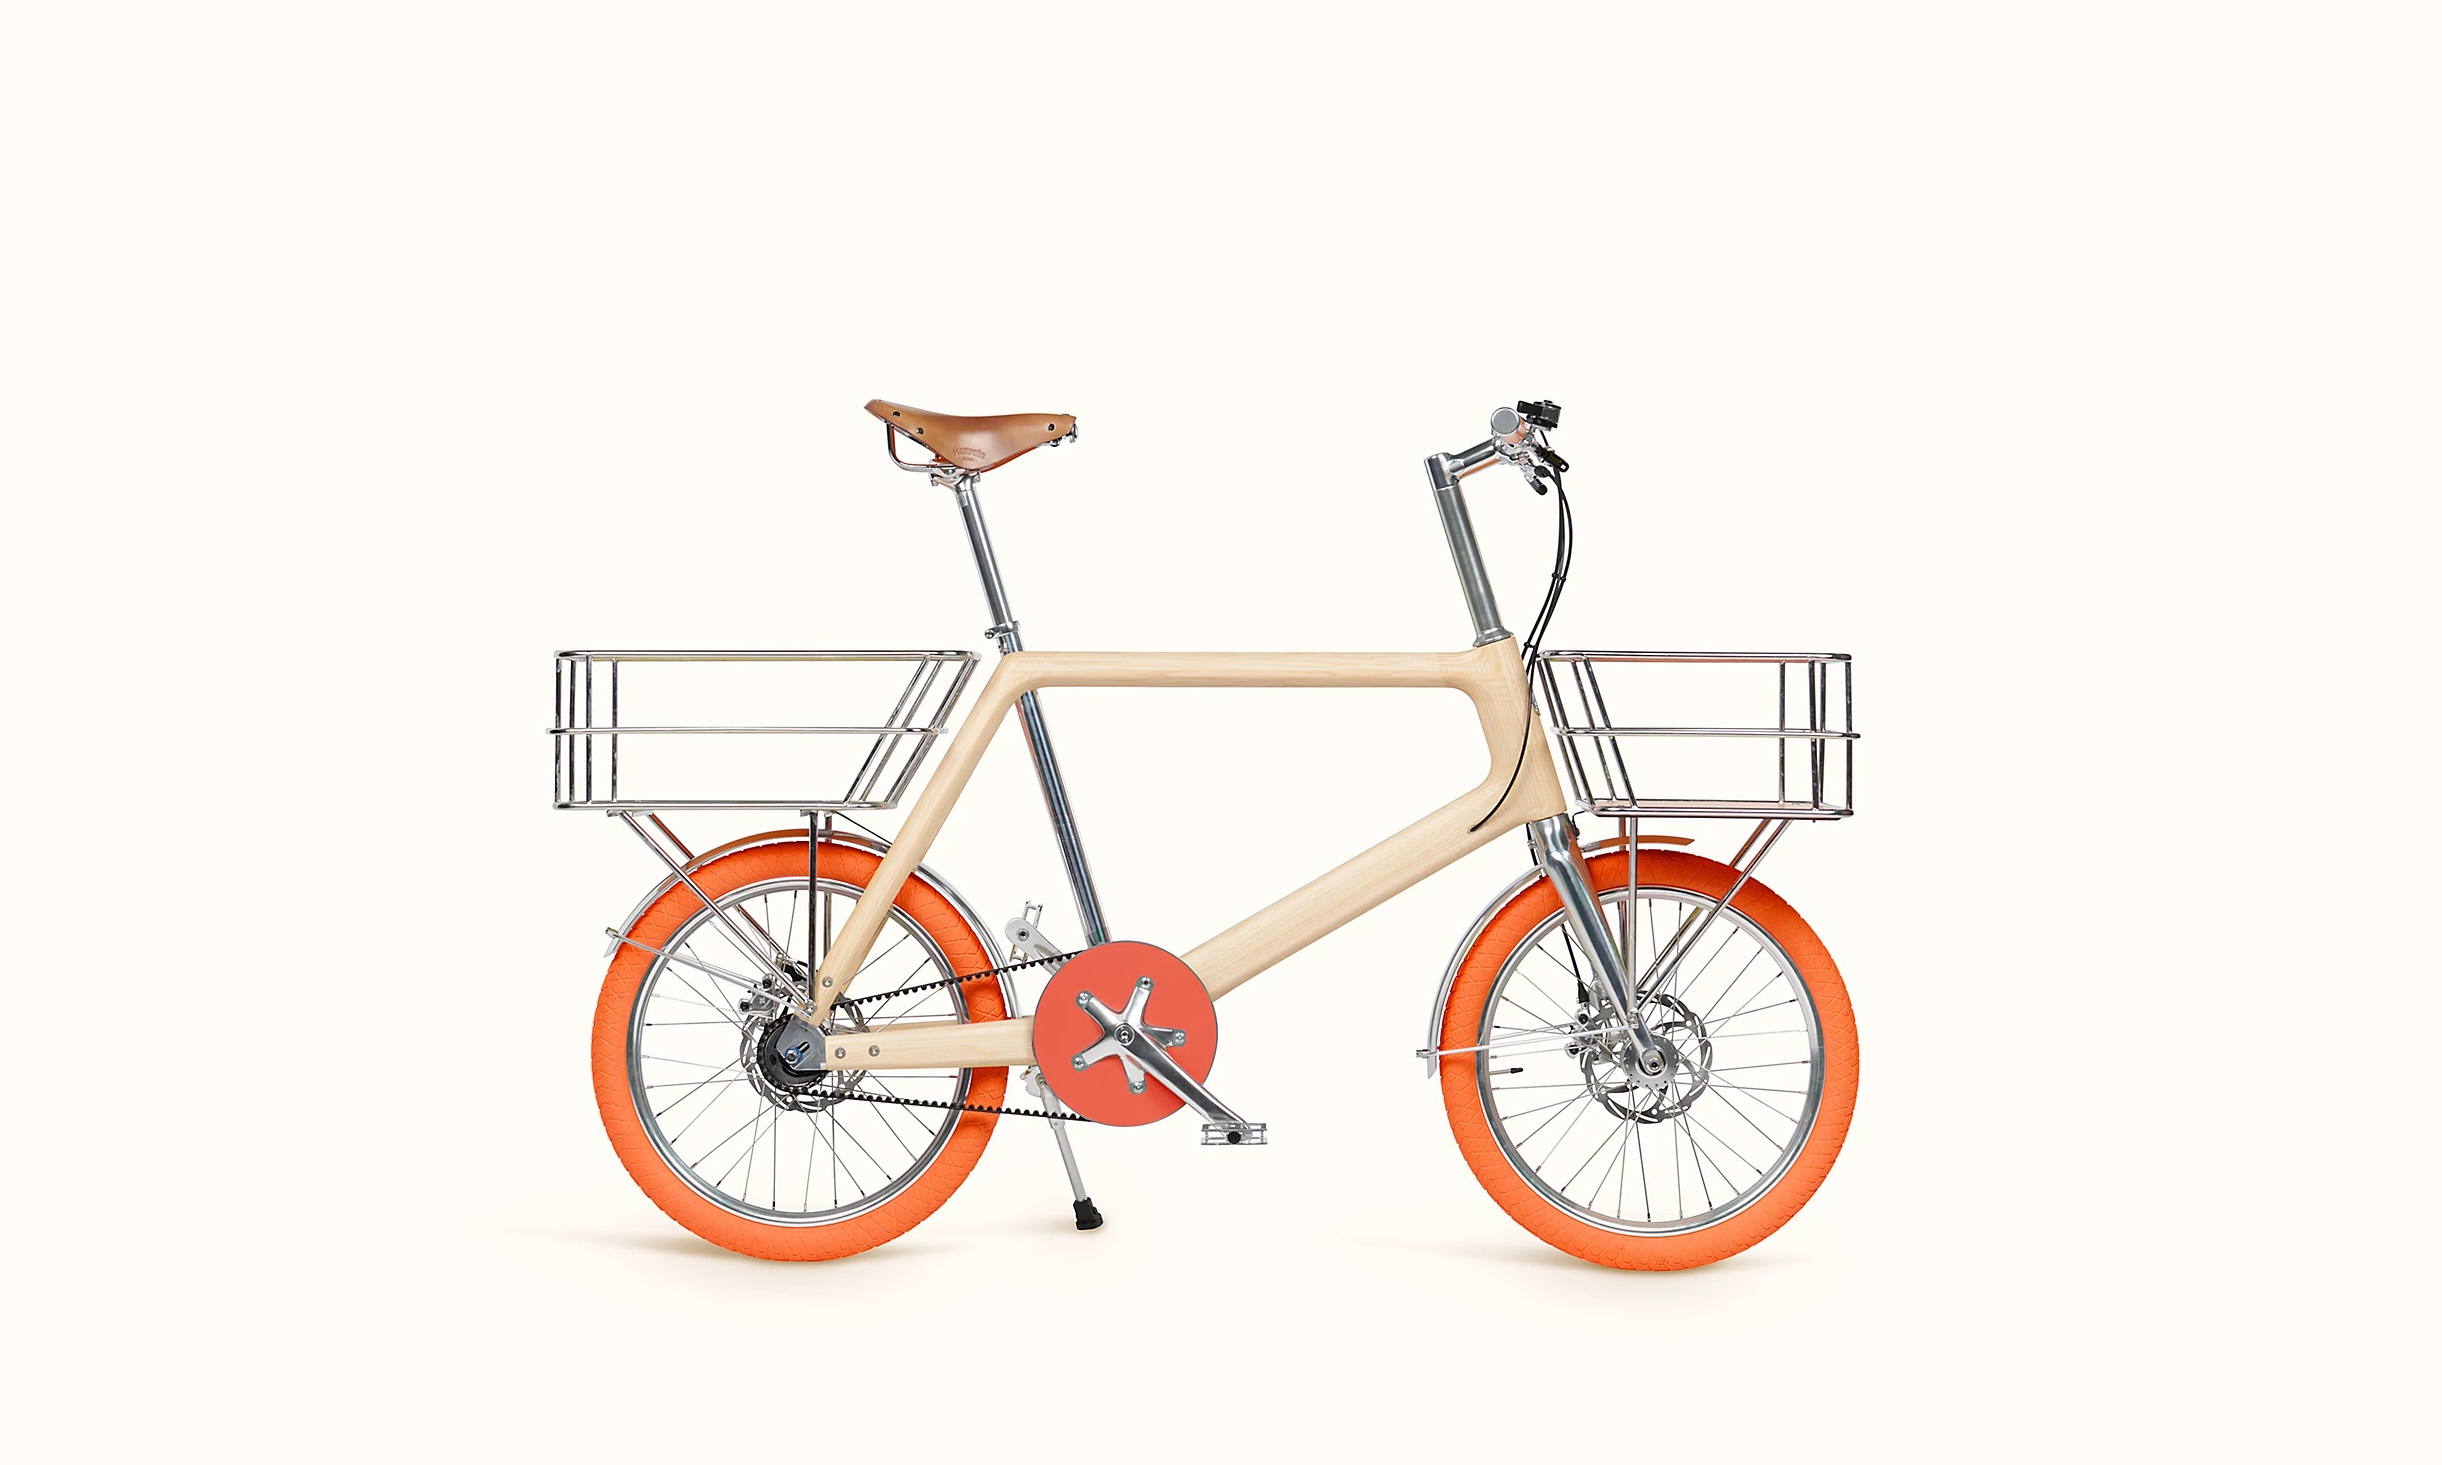 爱马仕推出售价 16.5 万元的新款自行车